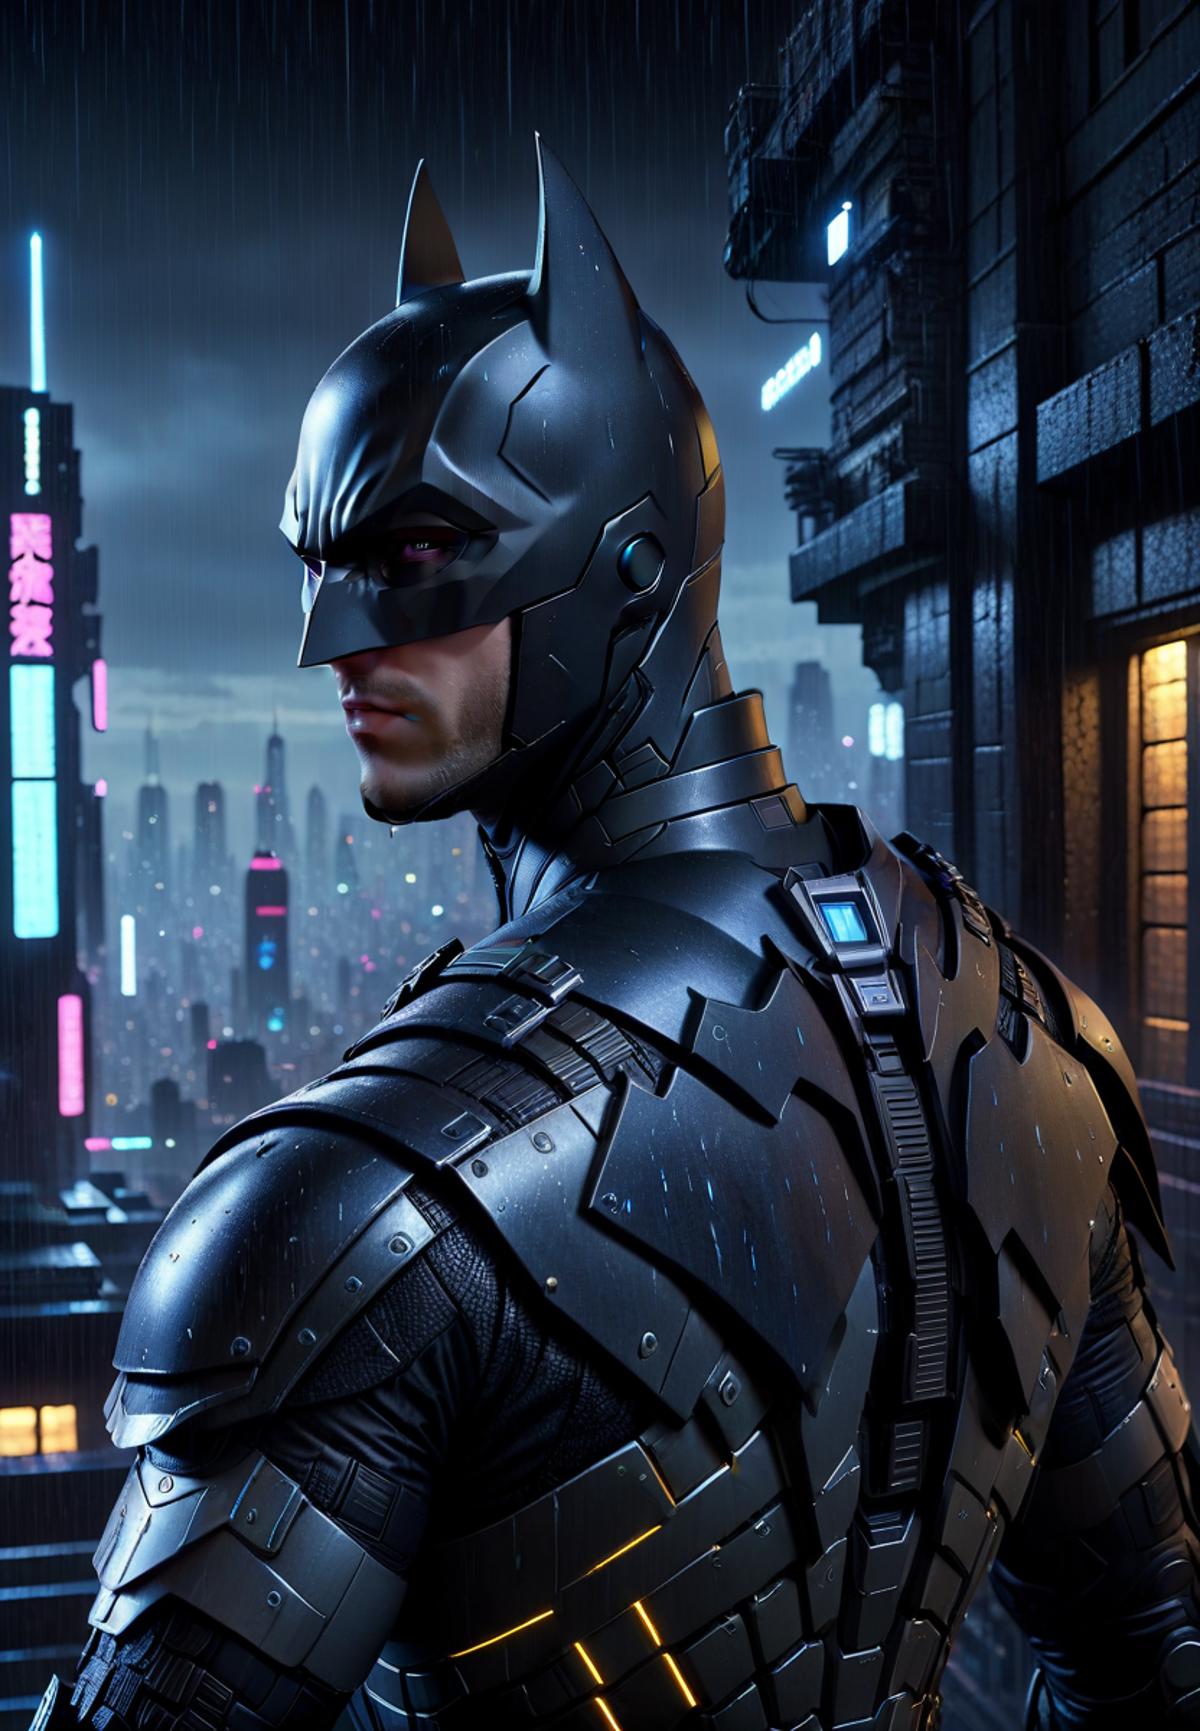 A Batman in a futuristic city.